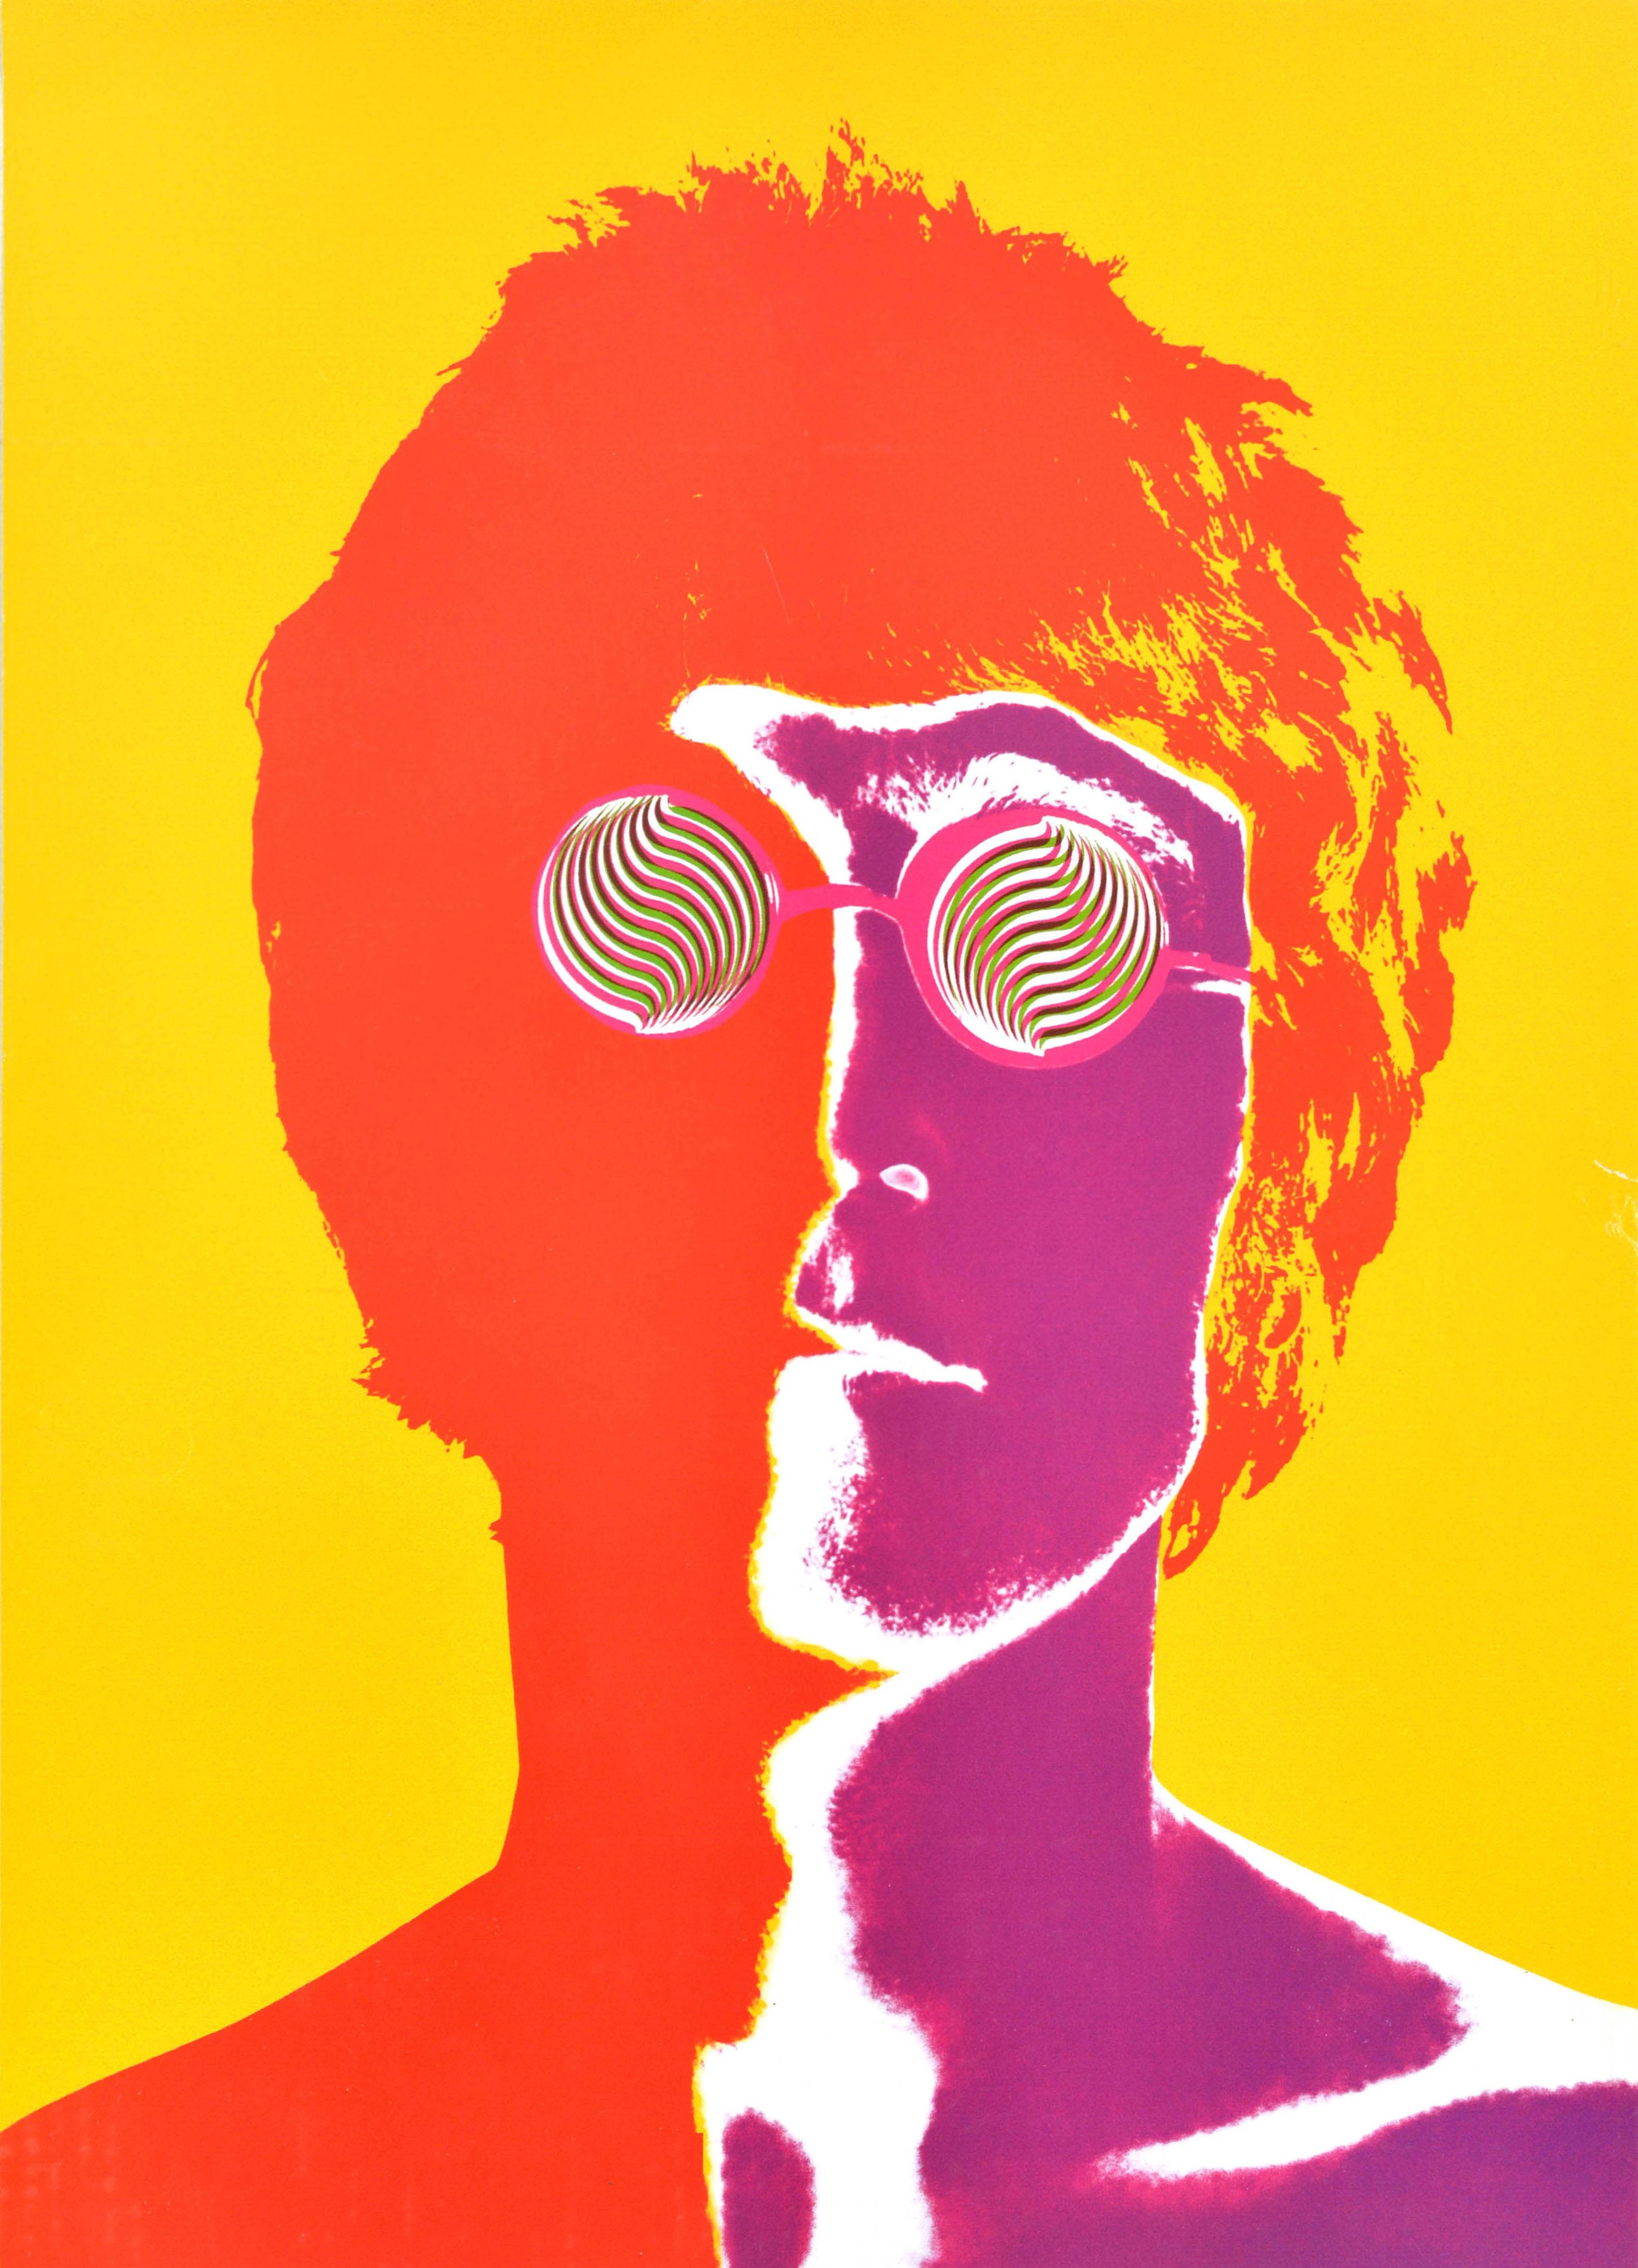 Affiche publicitaire originale de musique vintage présentant une photo colorée et psychédélique réalisée selon une nouvelle technique de solarisation par le photographe américain Richard Avedon (1923-2004) du musicien et